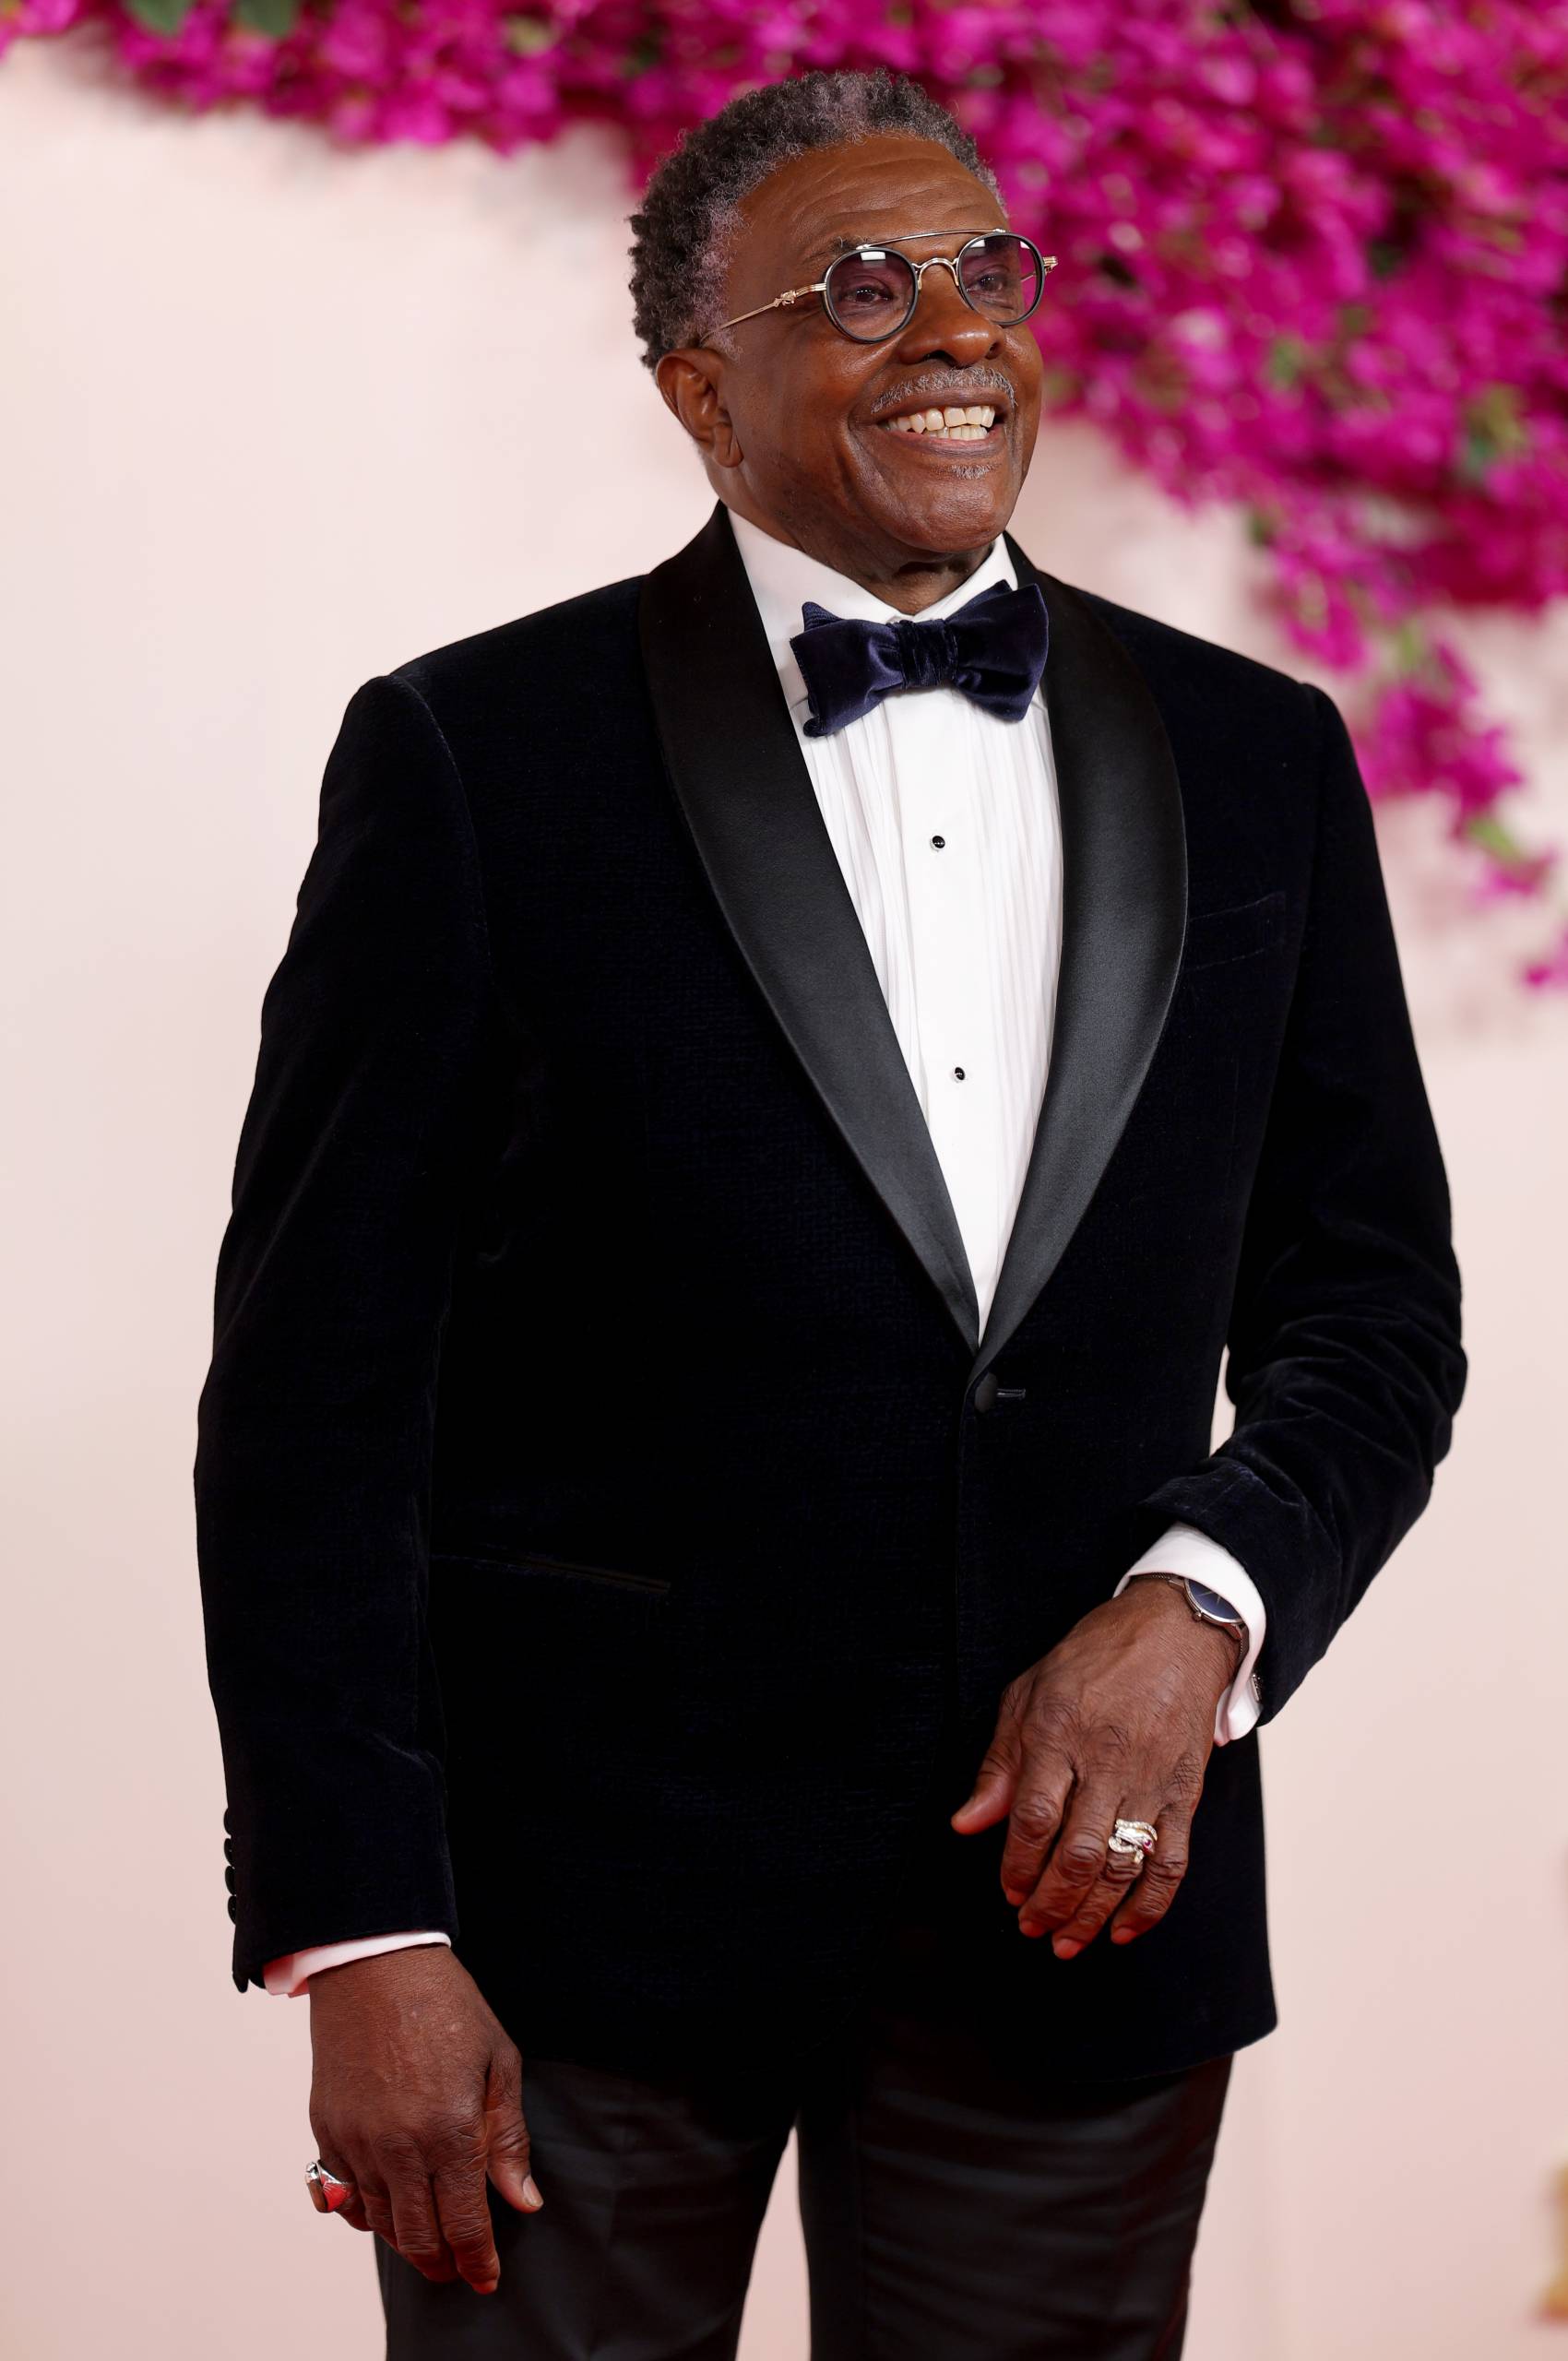 A Black man in a tuxedo smiles warmly.